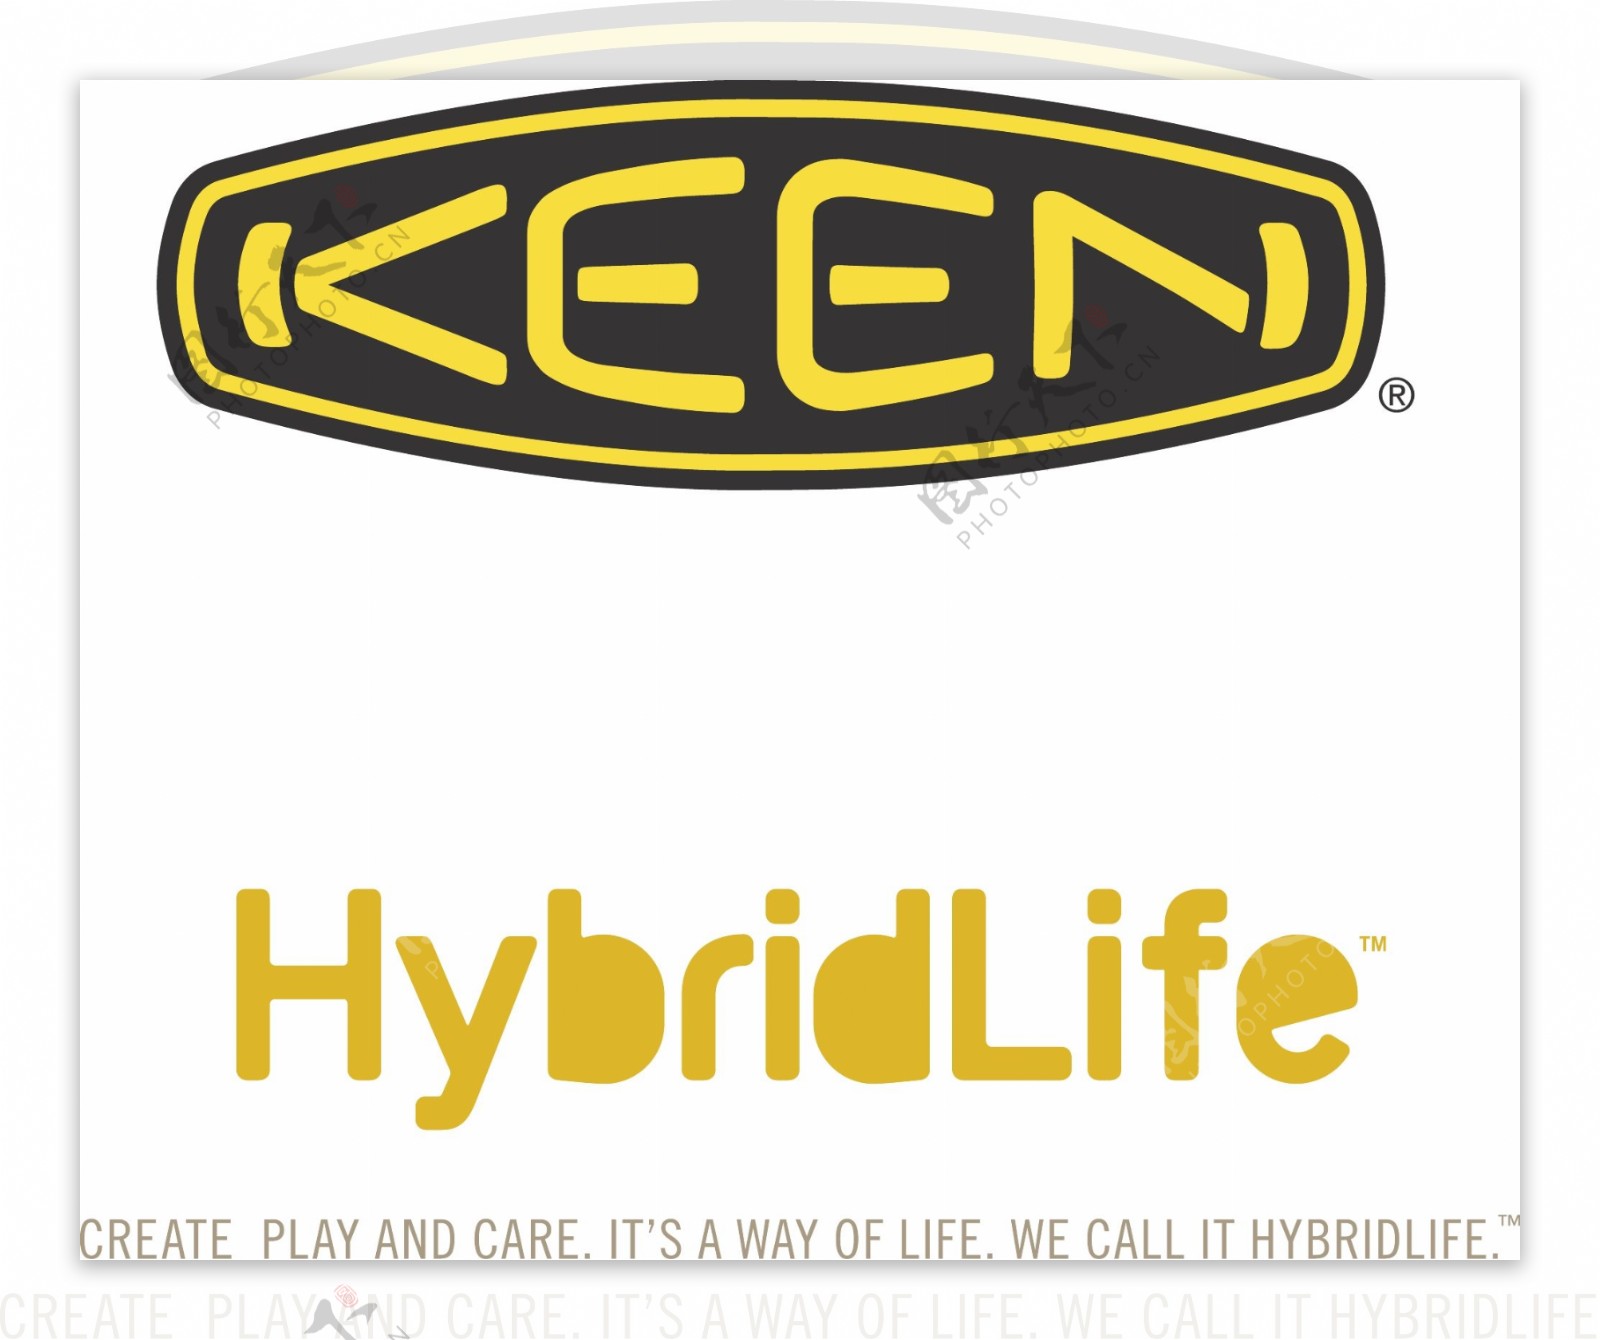 户外品牌KEEN矢量logo